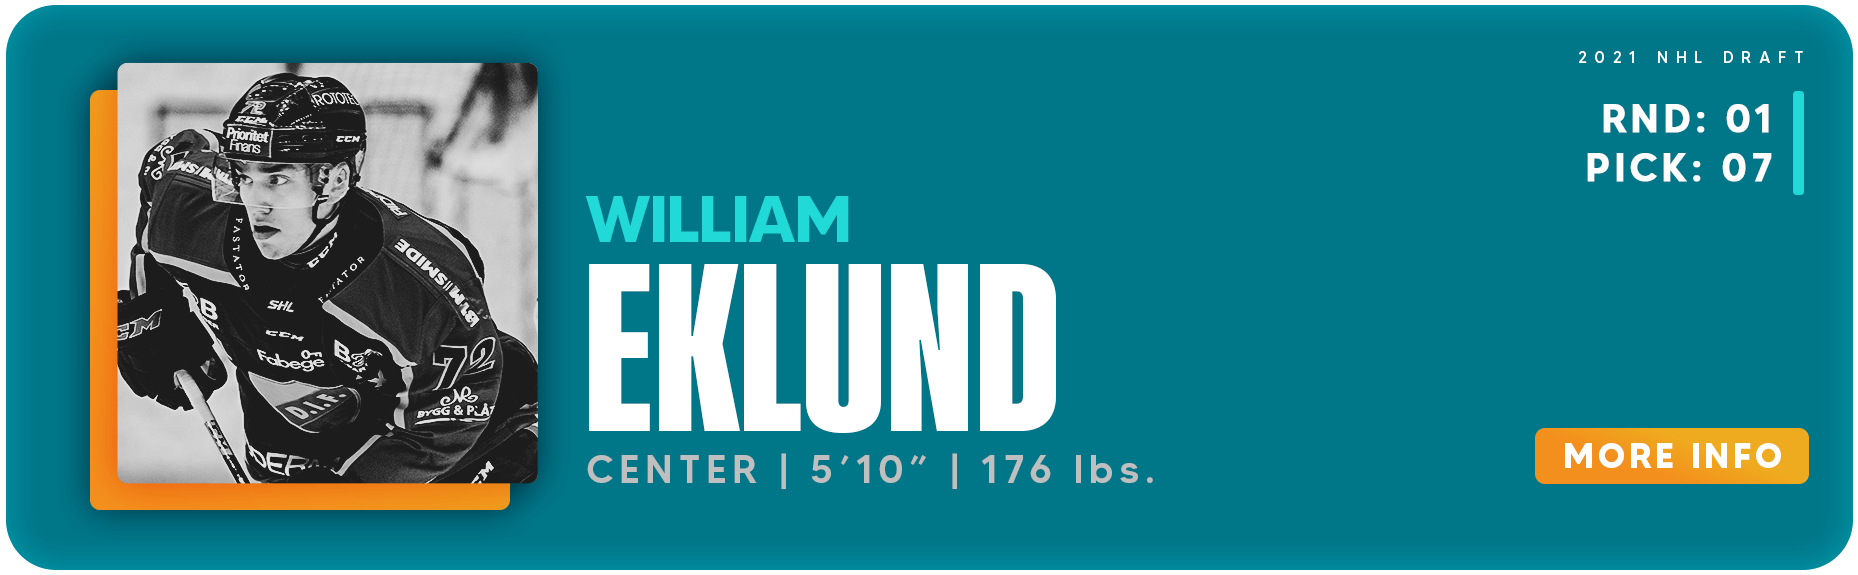 William Eklund